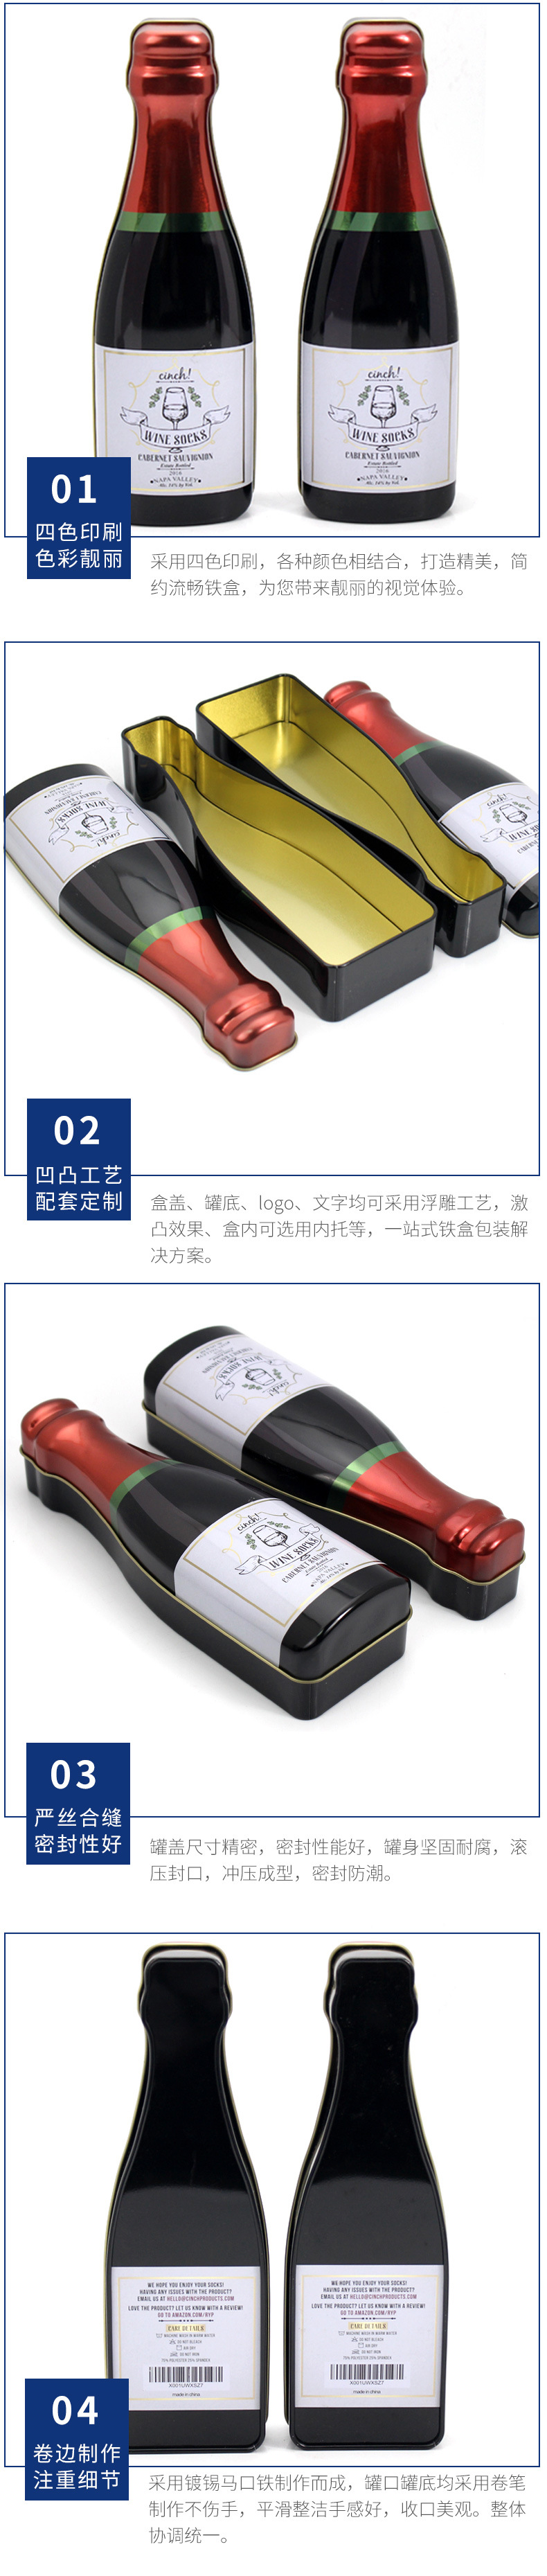 异型马口铁酒盒定制 葡萄酒红酒铁罐包装 扑克牌铁盒包装生产厂家示例图14